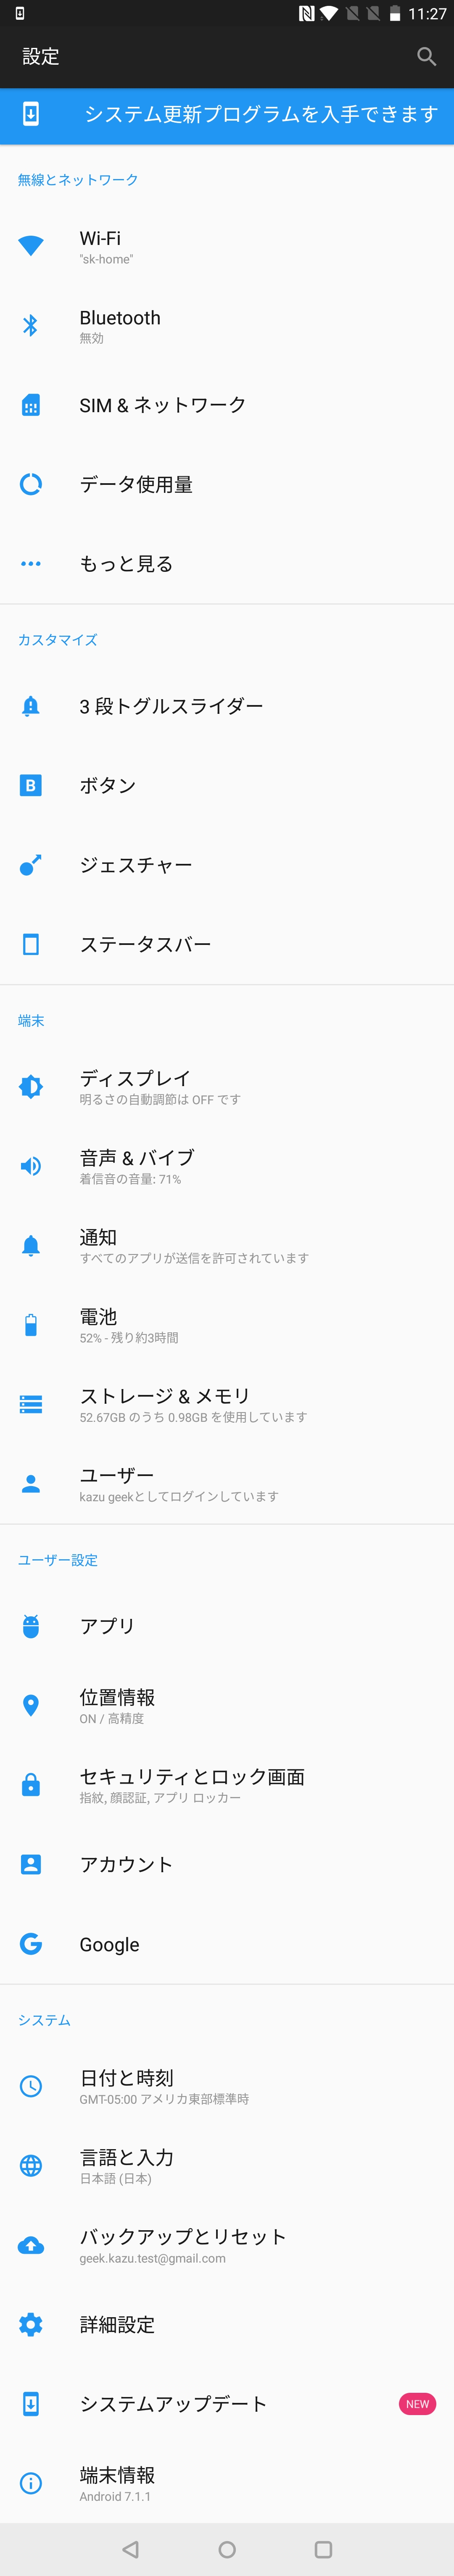 OnePlus 5T 設定 (1)